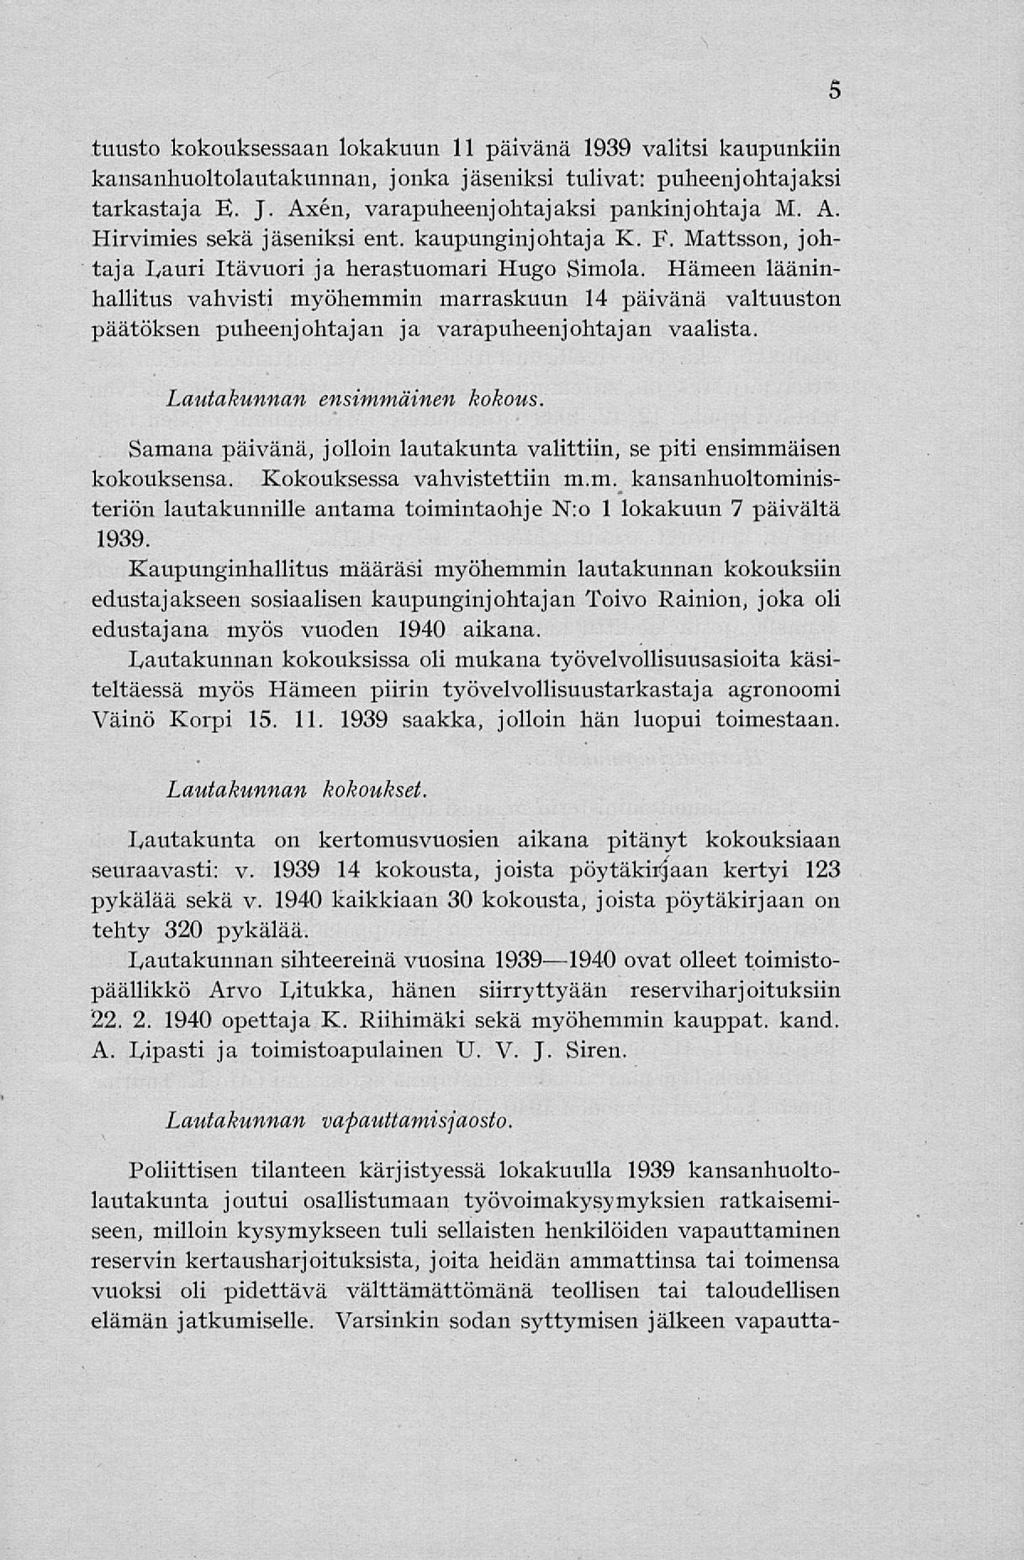 tuusto kokouksessaan lokakuun 11 päivänä 1939 valitsi kaupunkiin kansanhuoltolautakunnan, jonka jäseniksi tulivat: puheenjohtajaksi tarkastaja E. J. Axen, varapuheenjohtajaksi pankinjohtaja M. A. Hirvimies sekä jäseniksi ent.